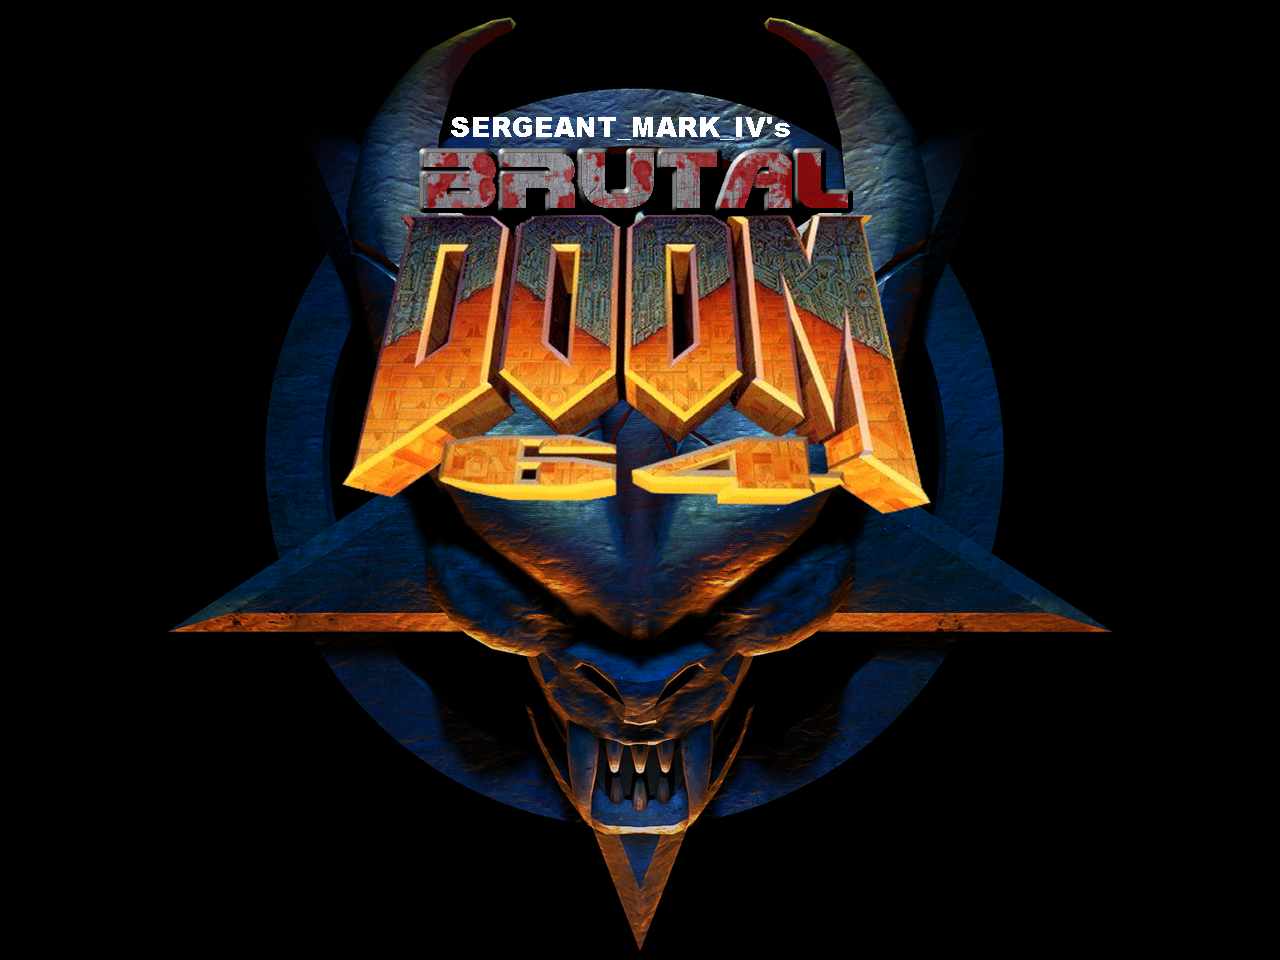 Doom 64 Backgrounds on Wallpapers Vista